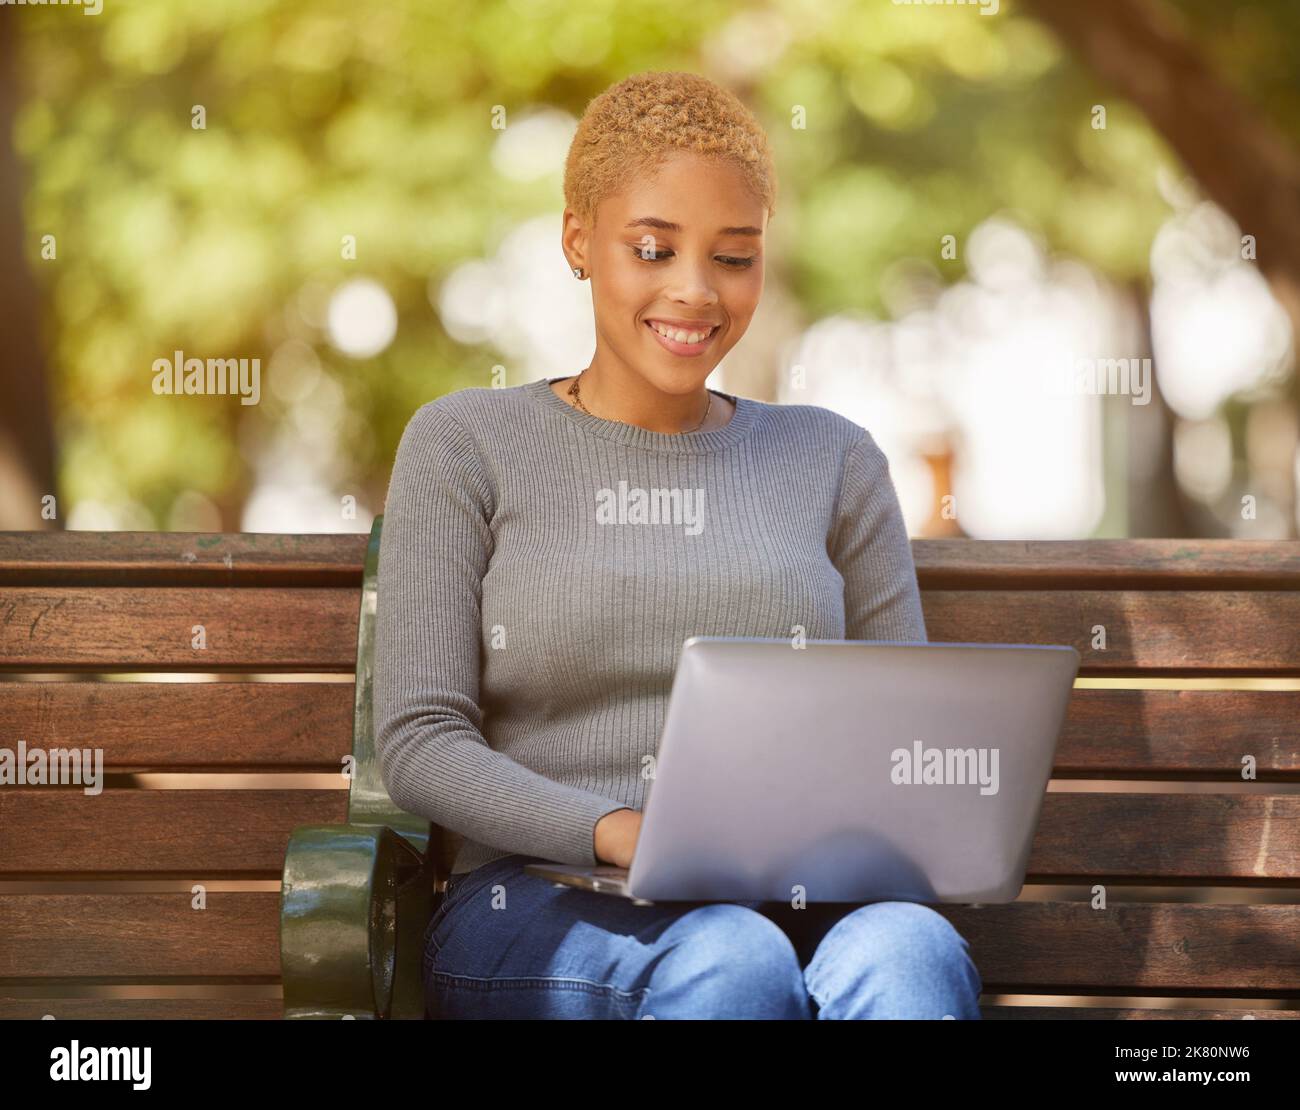 Glückliche schwarze Frau, Laptop und Outdoor Entspannen Sie sich in der Sonne auf der Bank in der Stadt, Online-Jobsuche oder Remote-Arbeit im Park. Junges Mädchen lächelnd, kreativ Stockfoto